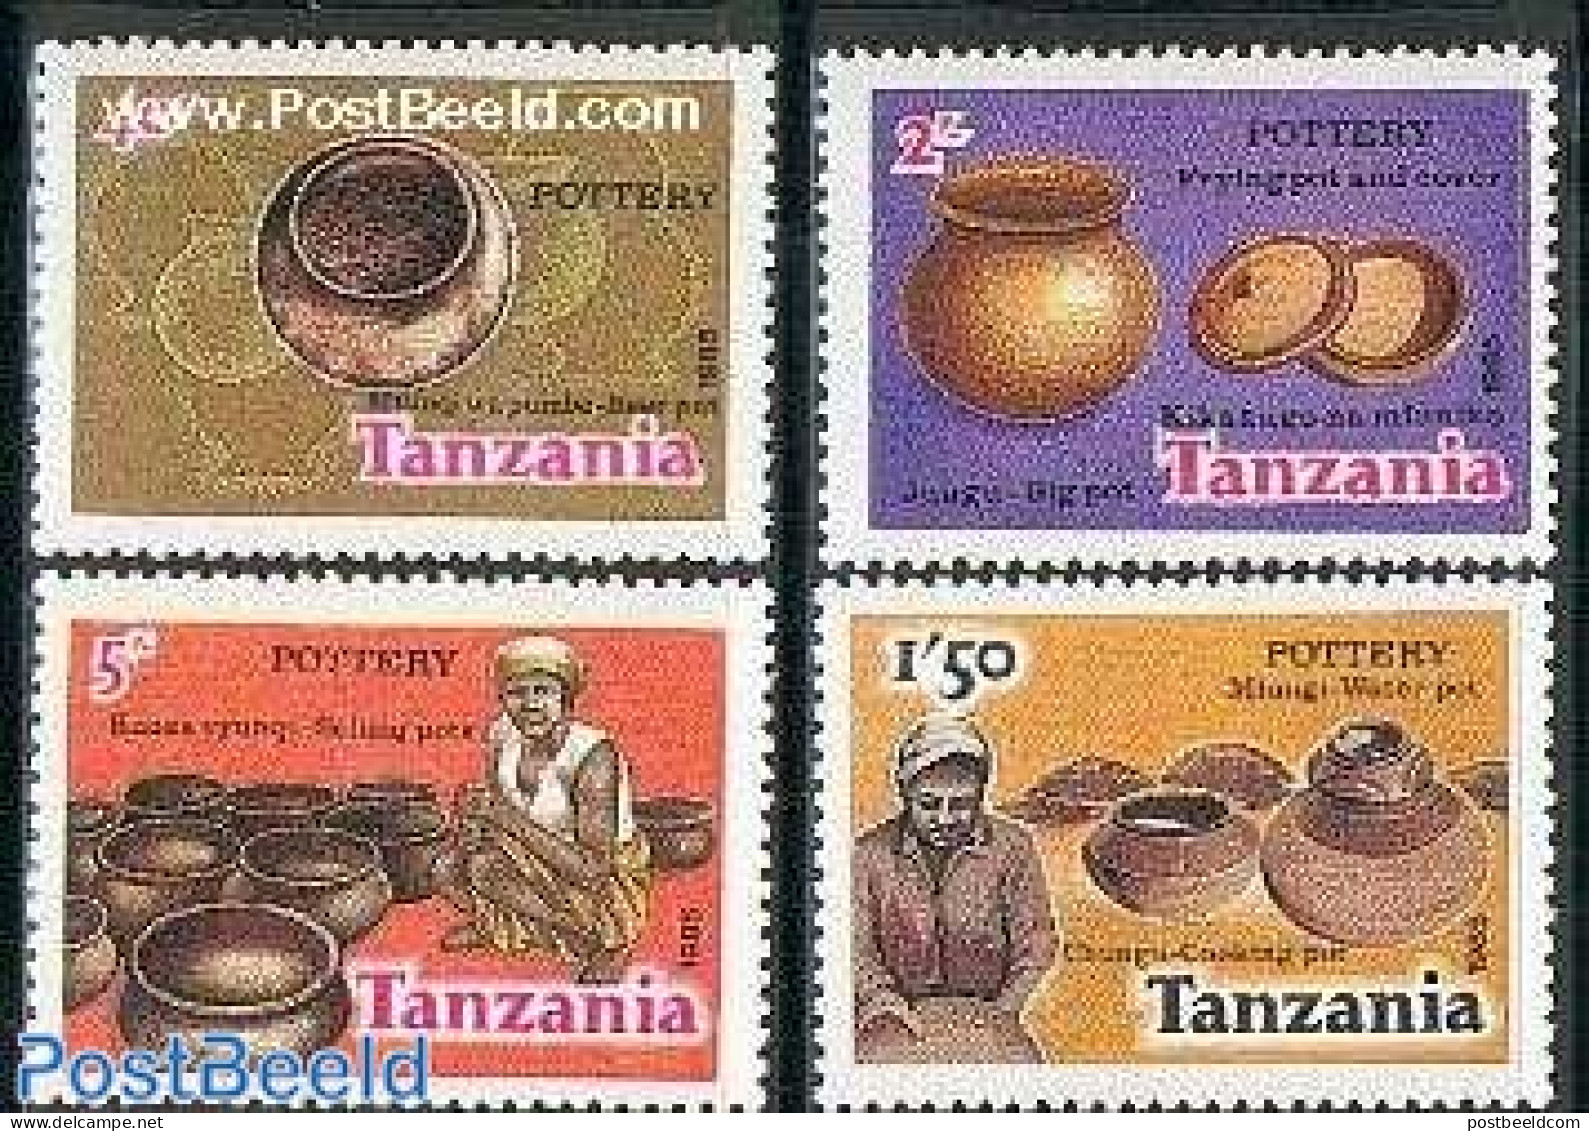 Tanzania 1985 Pottery 4v, Mint NH, Art - Art & Antique Objects - Ceramics - Handicrafts - Porcellana